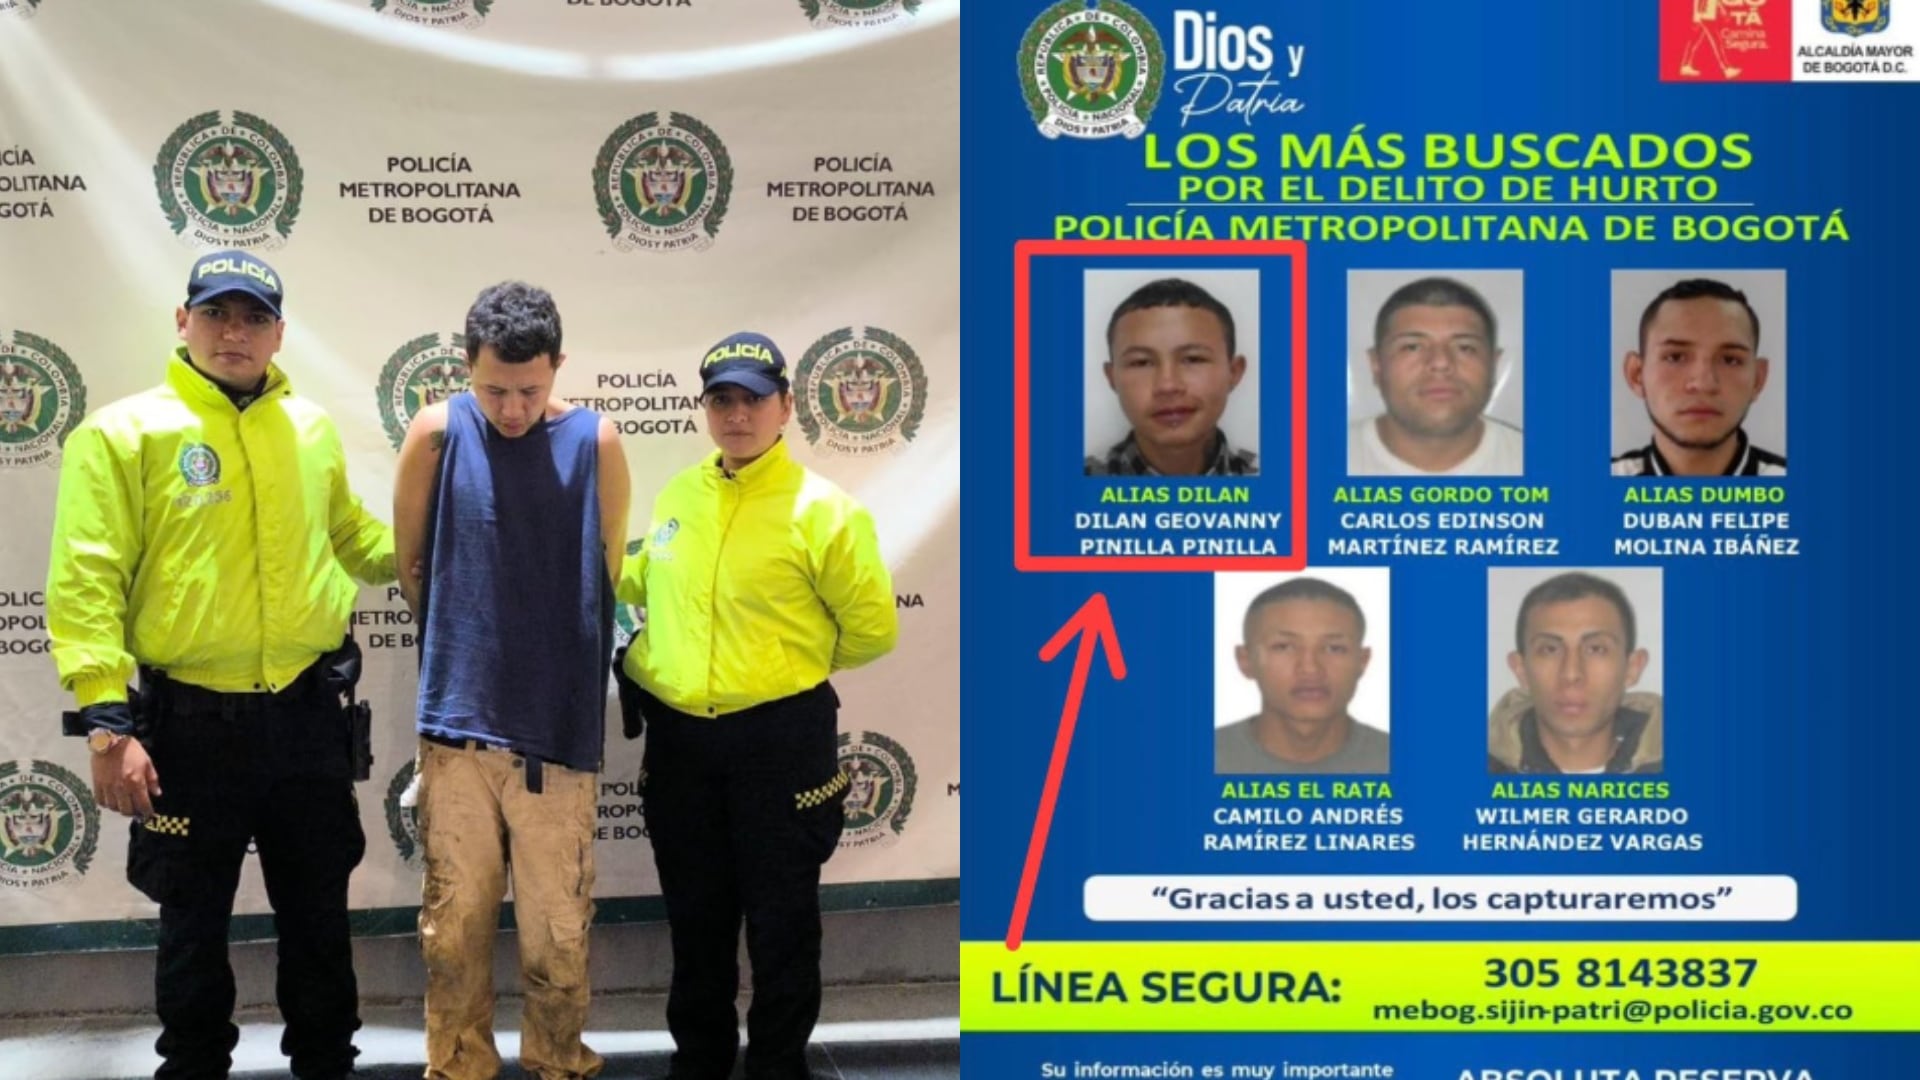 Autoridades confirmaron la captura de alias 'Dilan', uno de los ladrones más buscados en Bogotá.